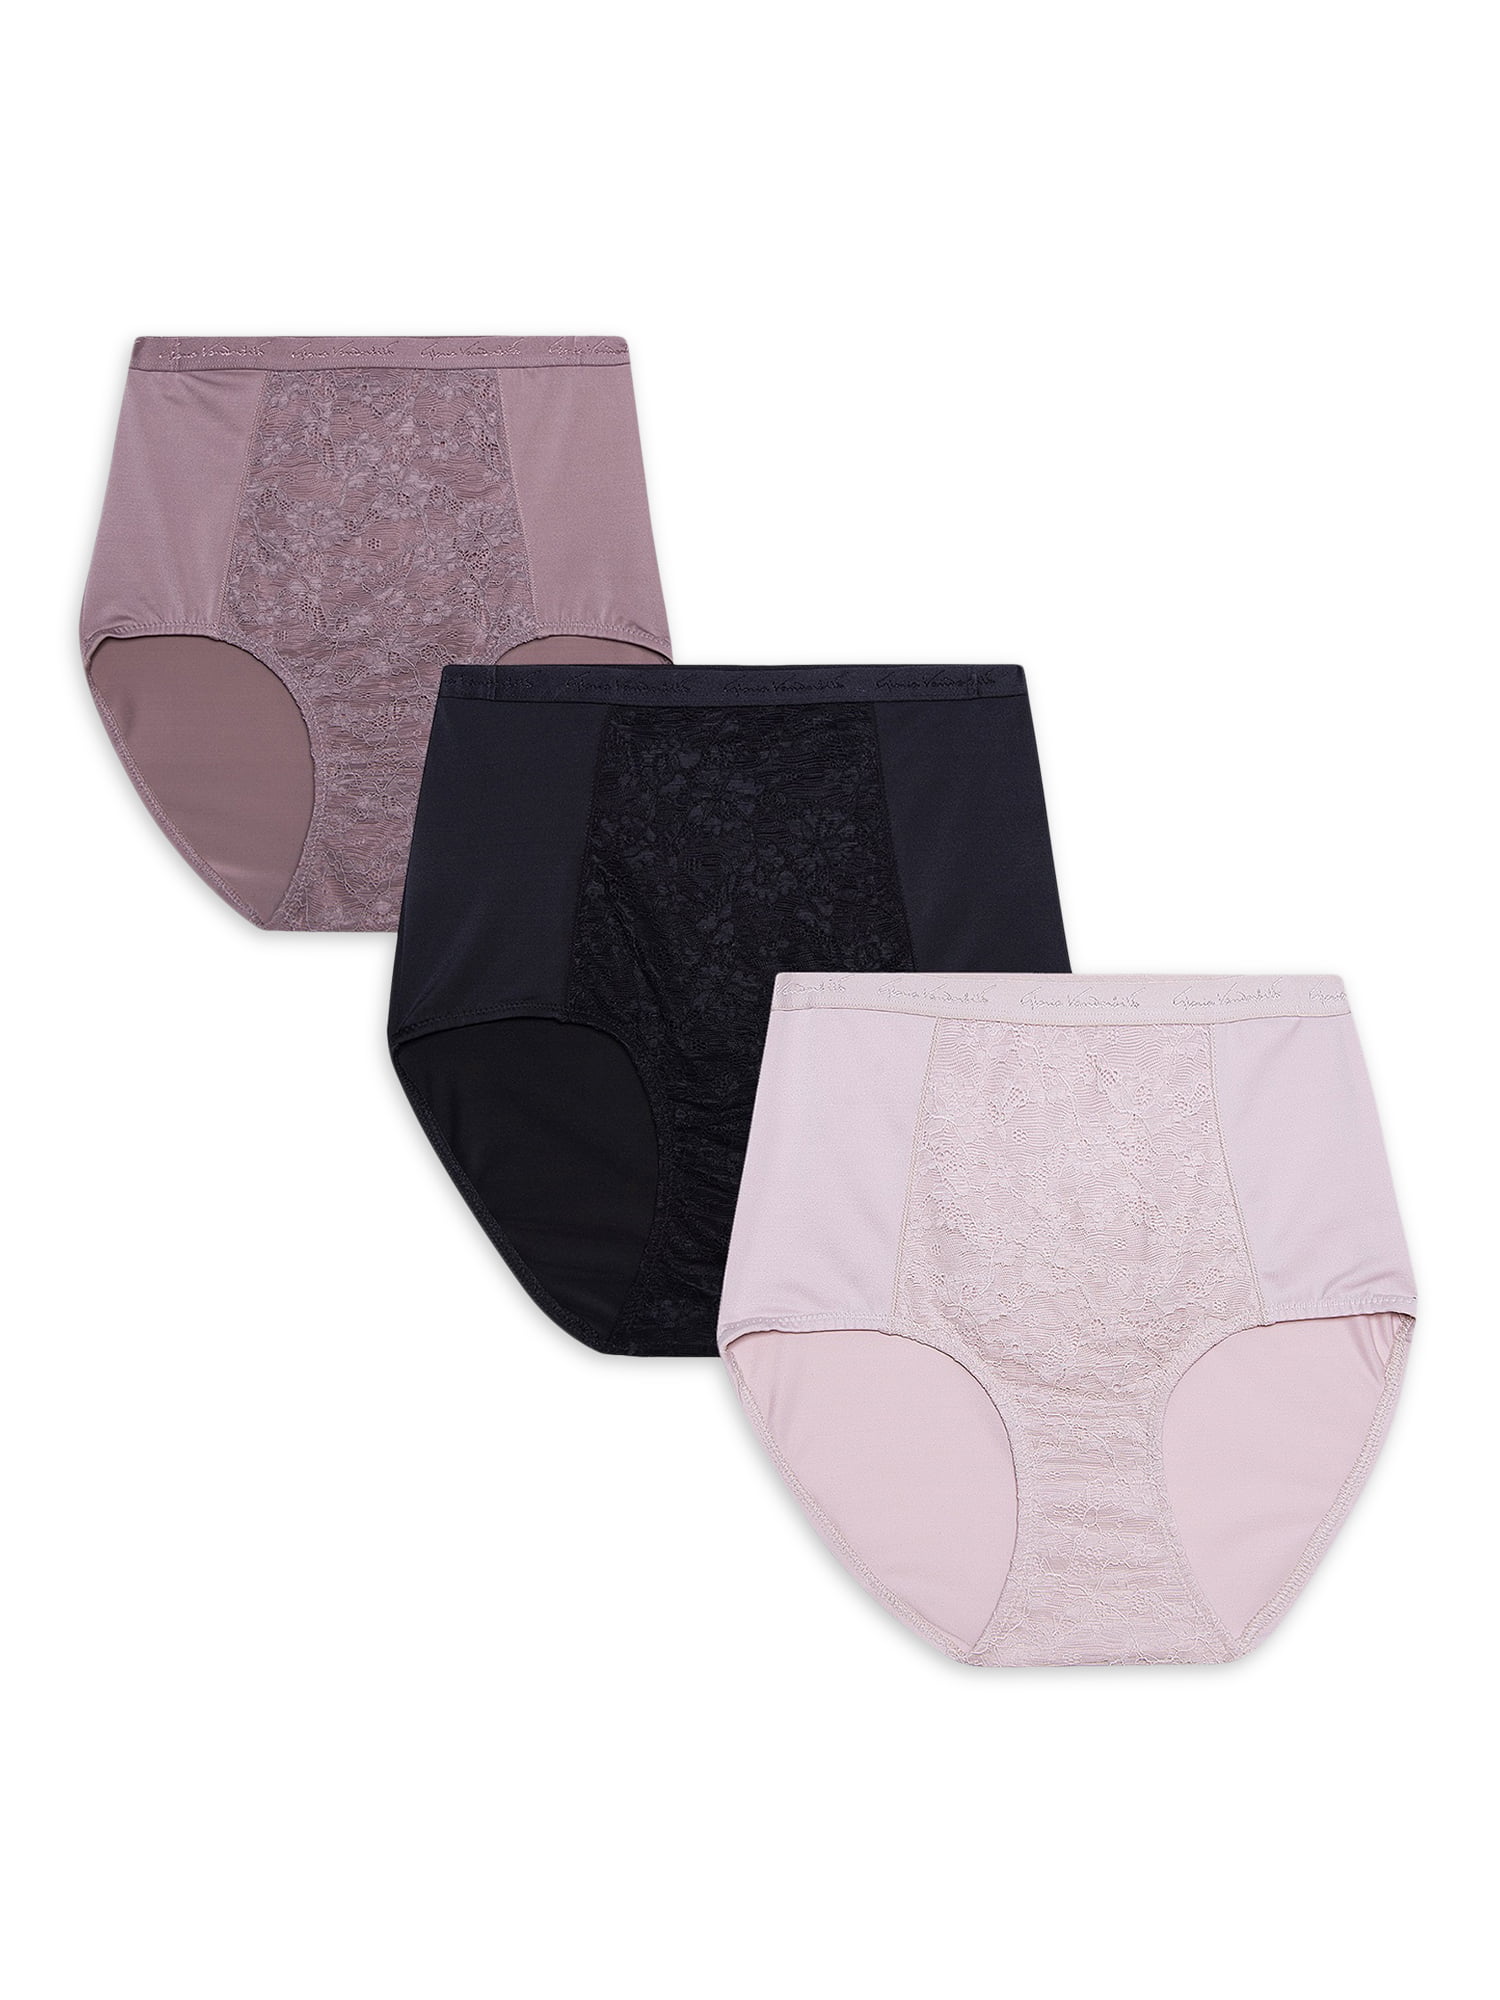 Gloria Vanderbilt Shaping Microfiber Briefs Panties L XL 2X